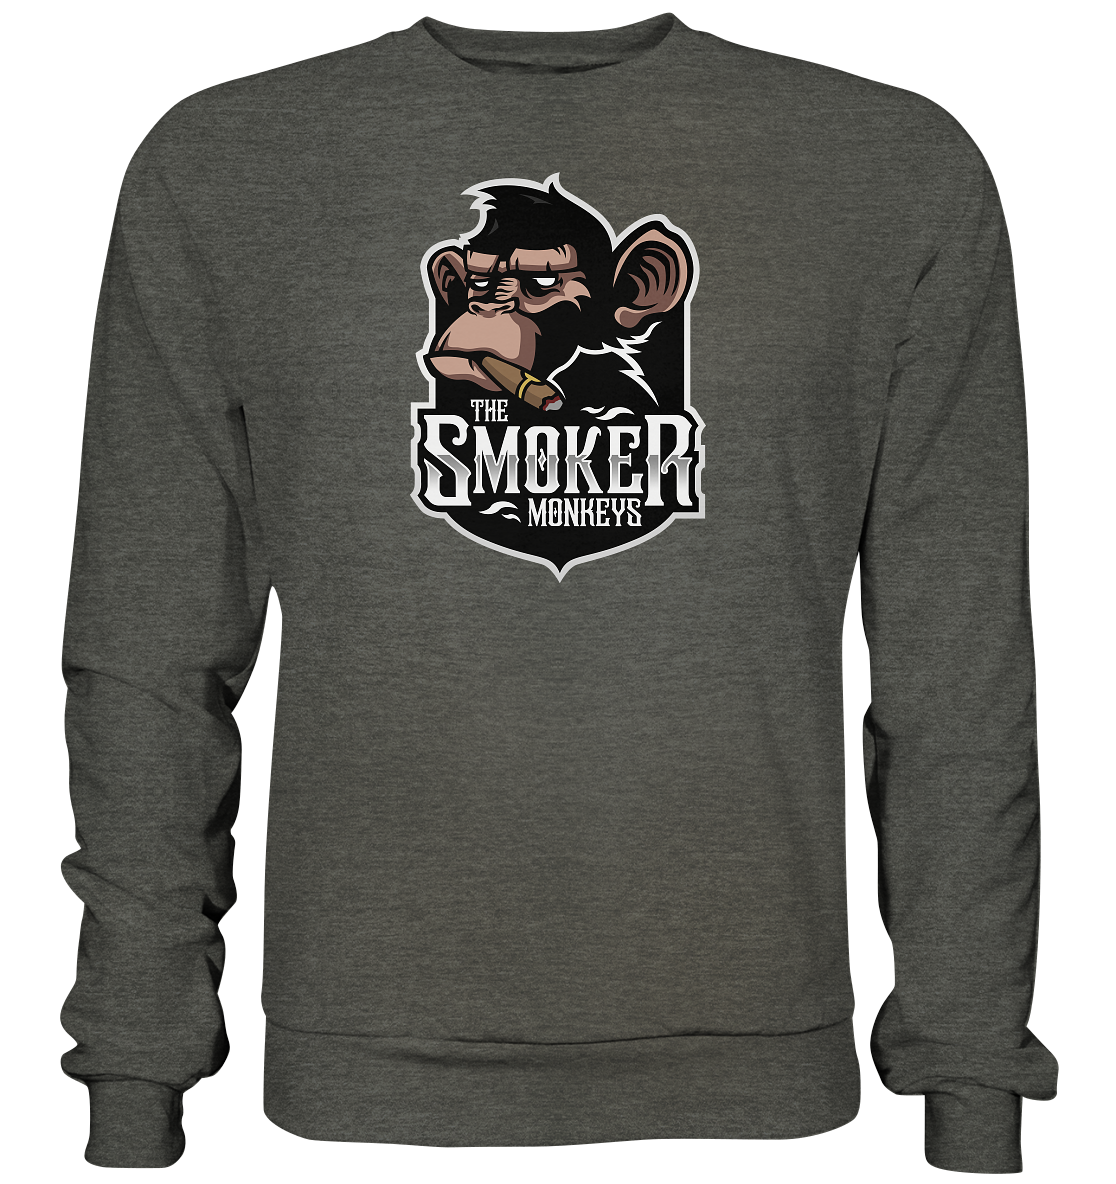 THE SMOKER MONKEYS - Basic Sweatshirt